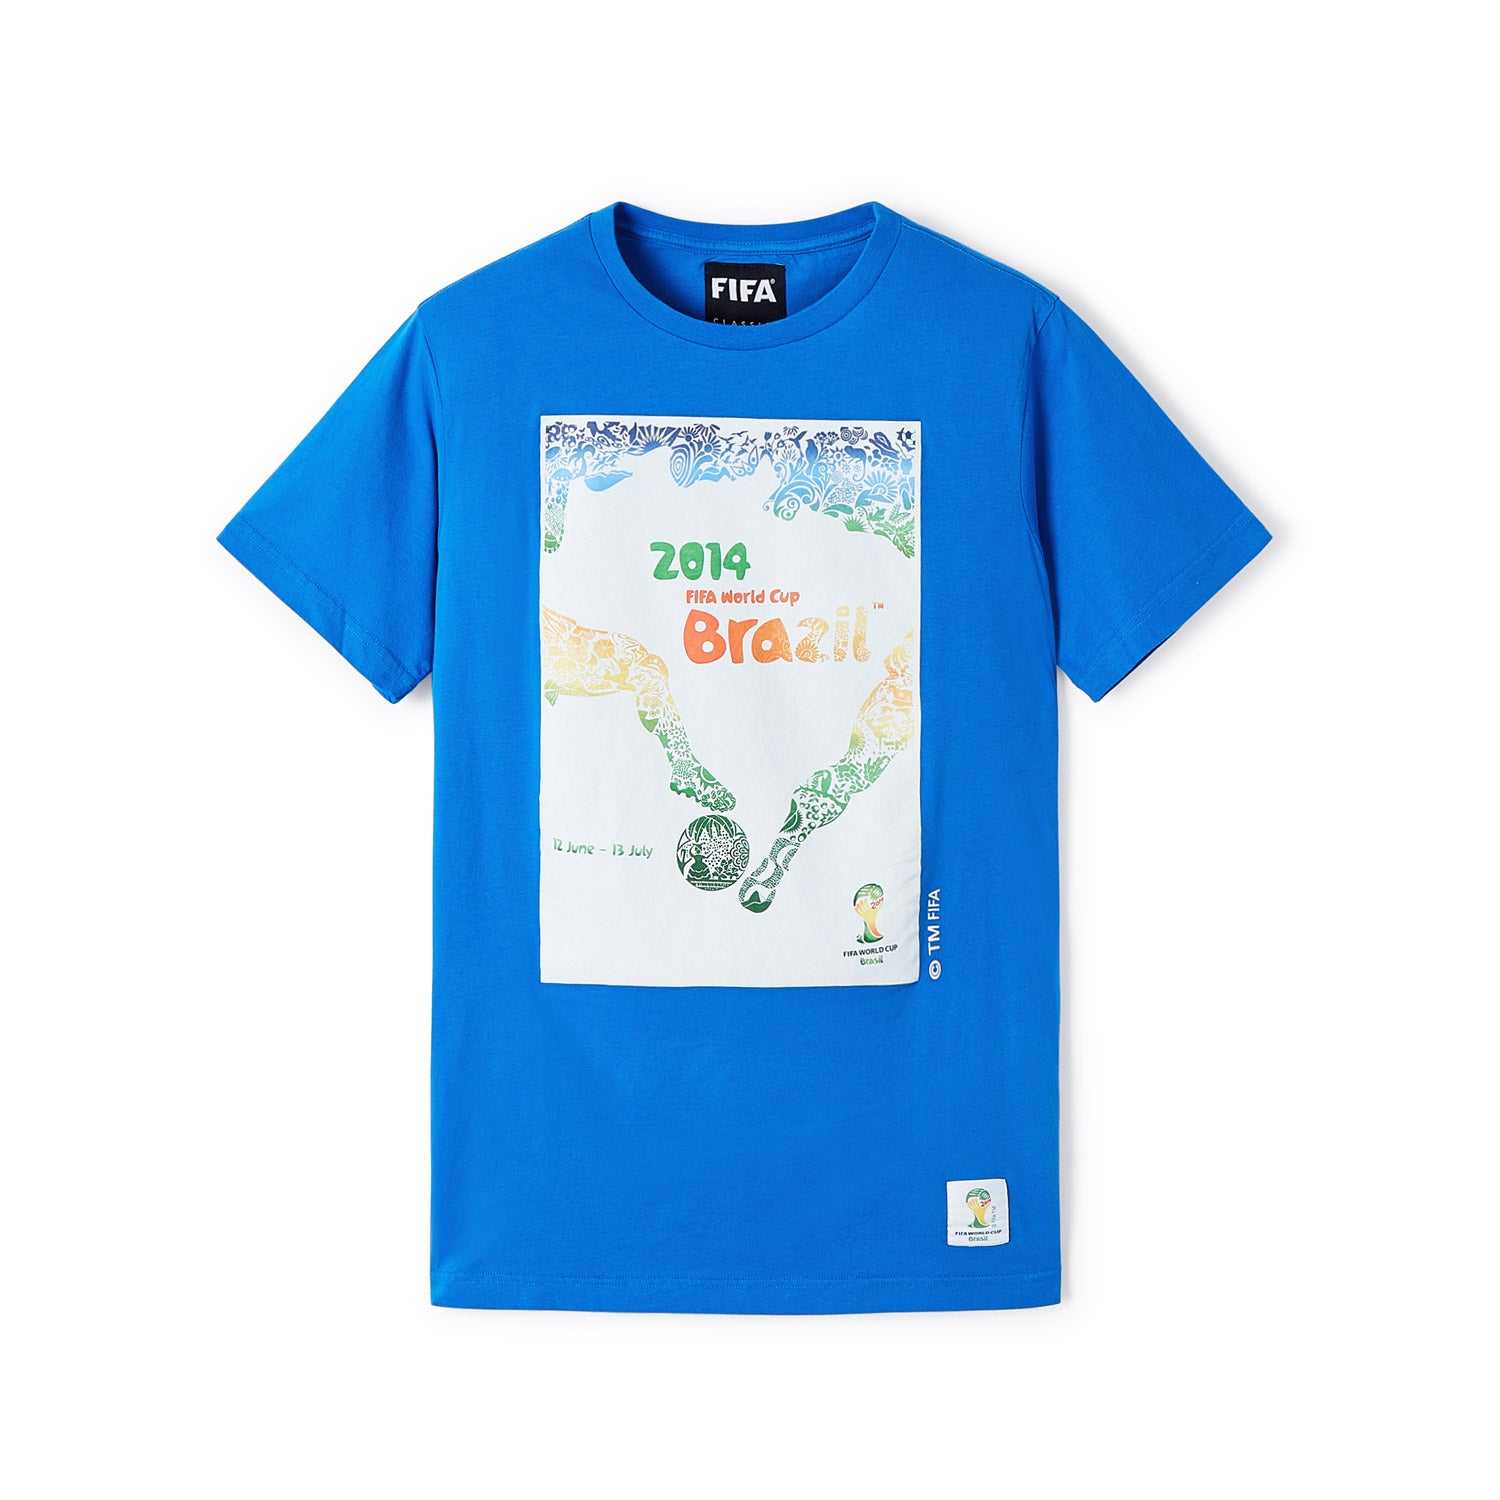 FIFA Rewind 2014 World Cup Poster T-Shirt - Men's